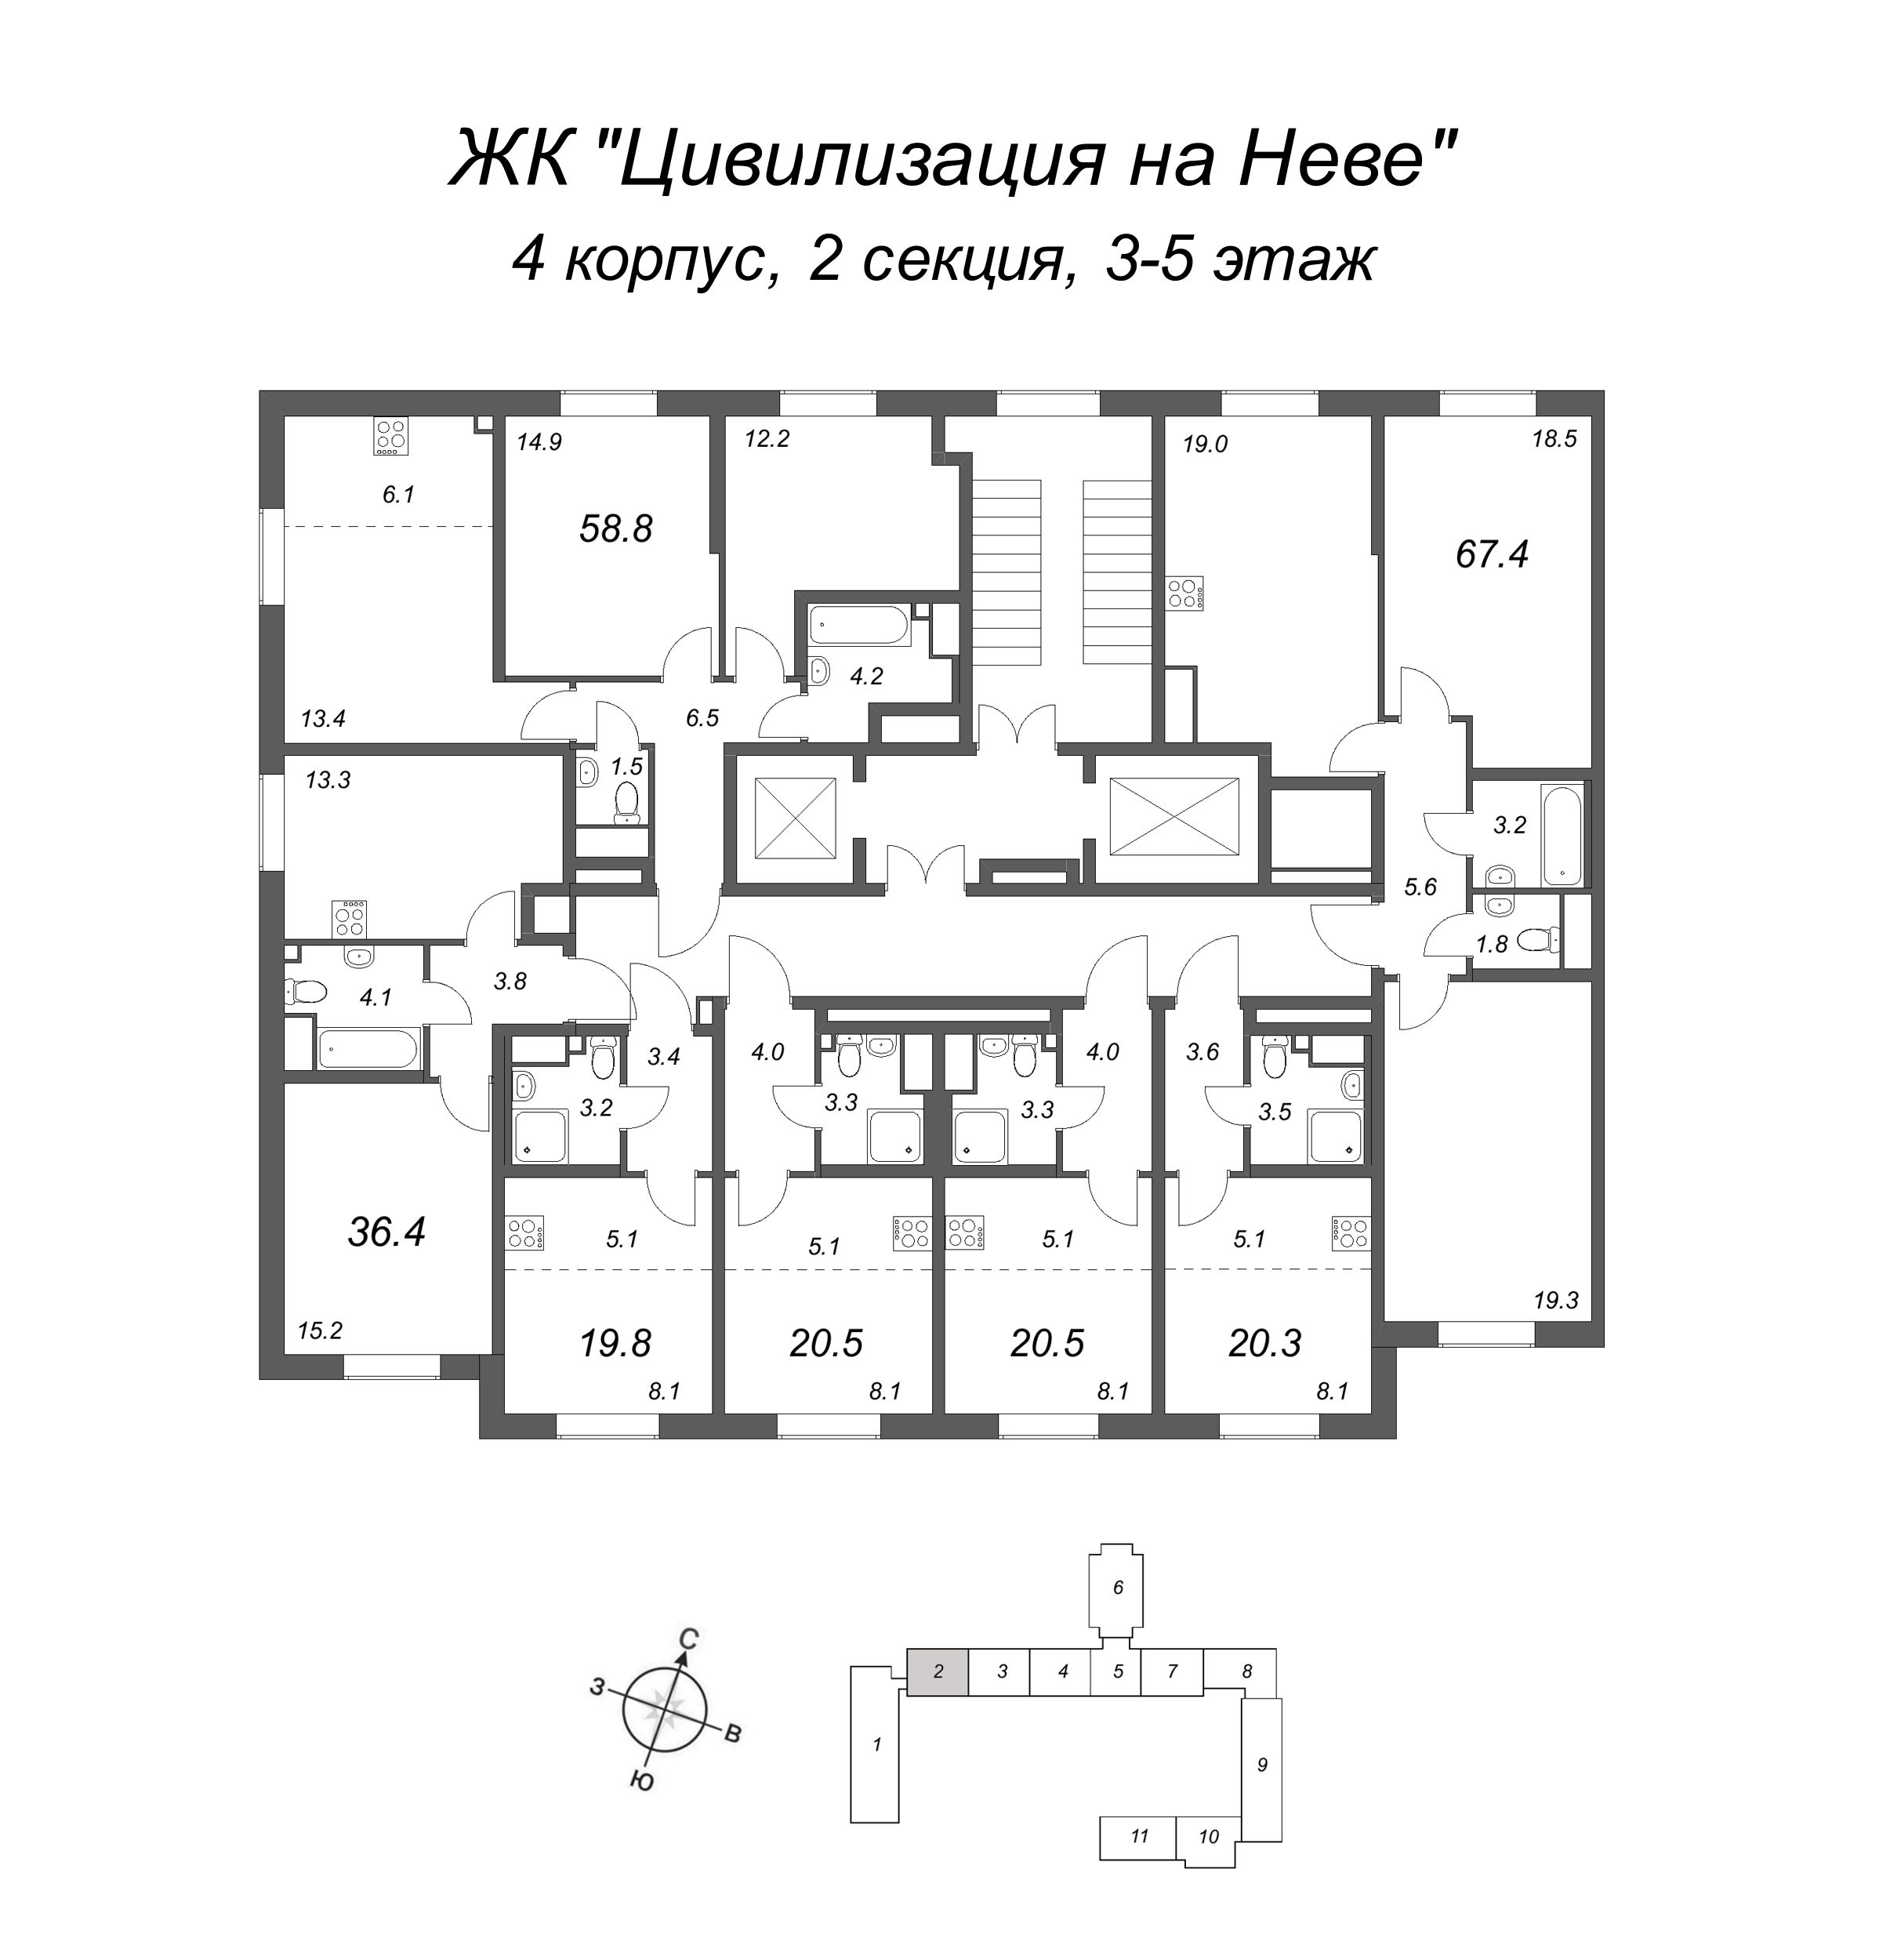 3-комнатная (Евро) квартира, 67.4 м² в ЖК "Цивилизация на Неве" - планировка этажа